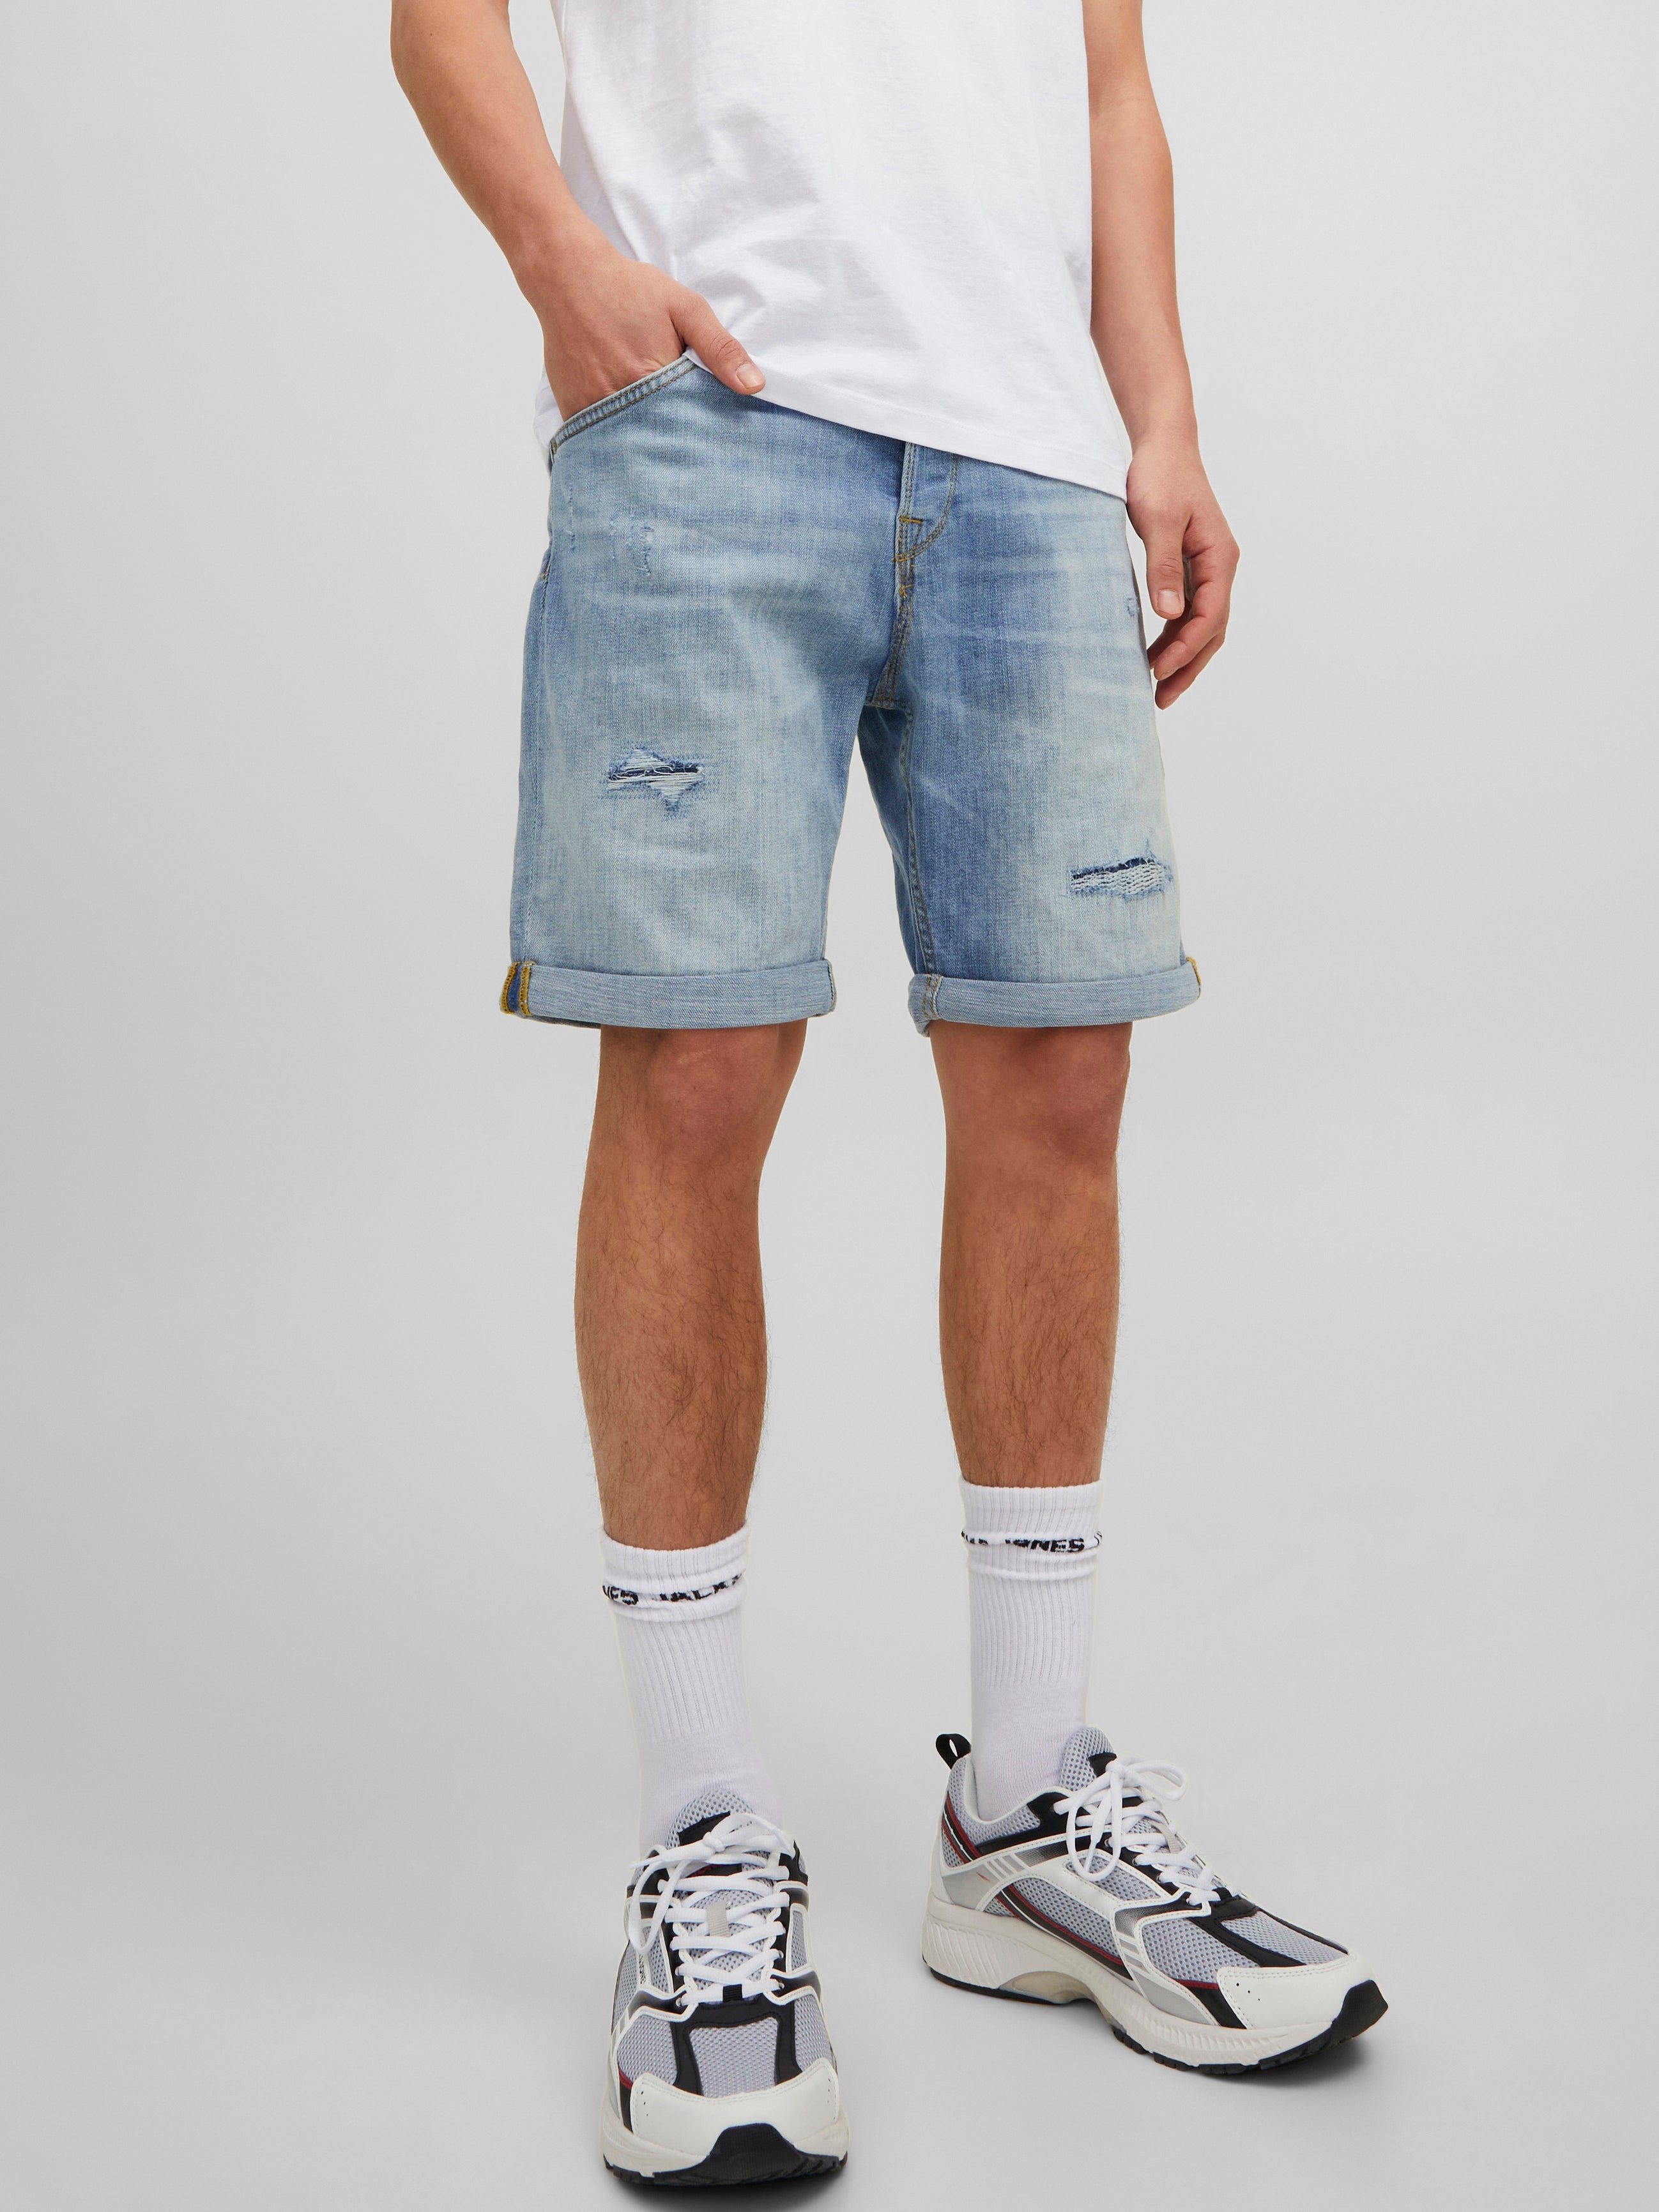 Jack & Jones Shorts jeans Grau L HERREN Jeans Basisch Rabatt 62 % 